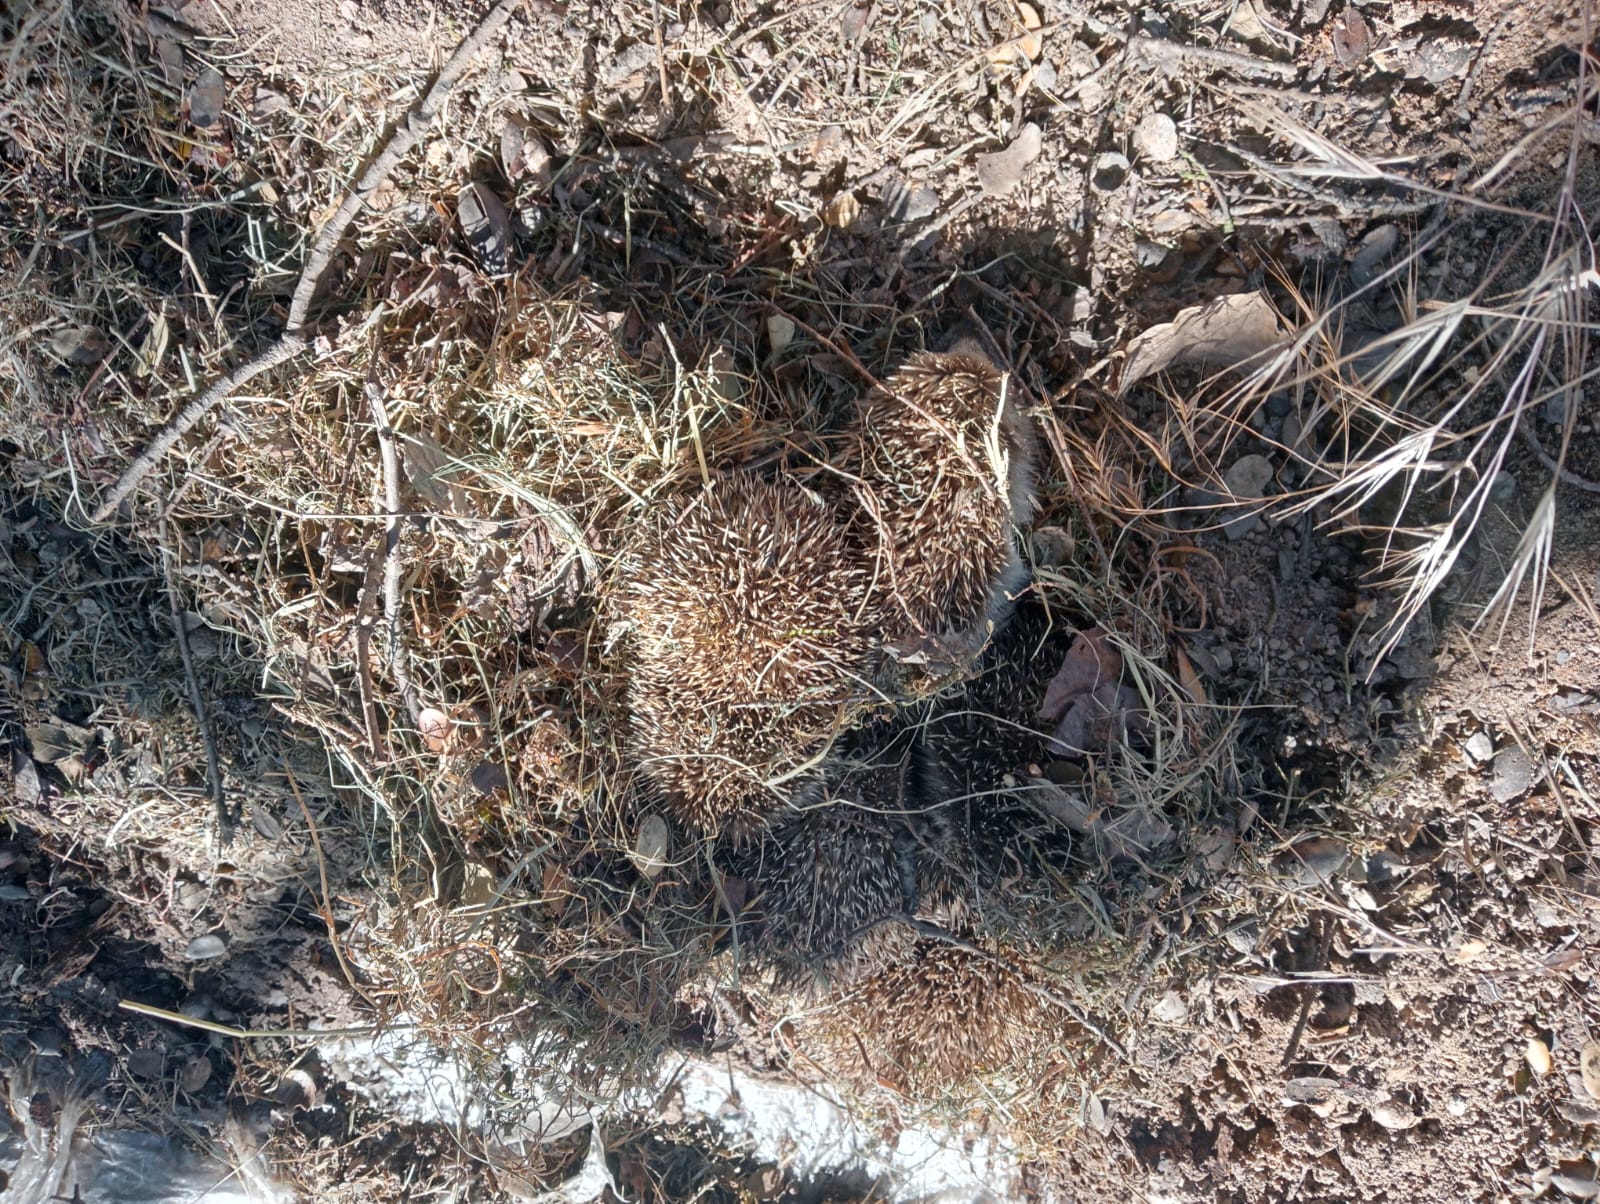 Las crías de erizo hechos un ovillo dentro del nido.